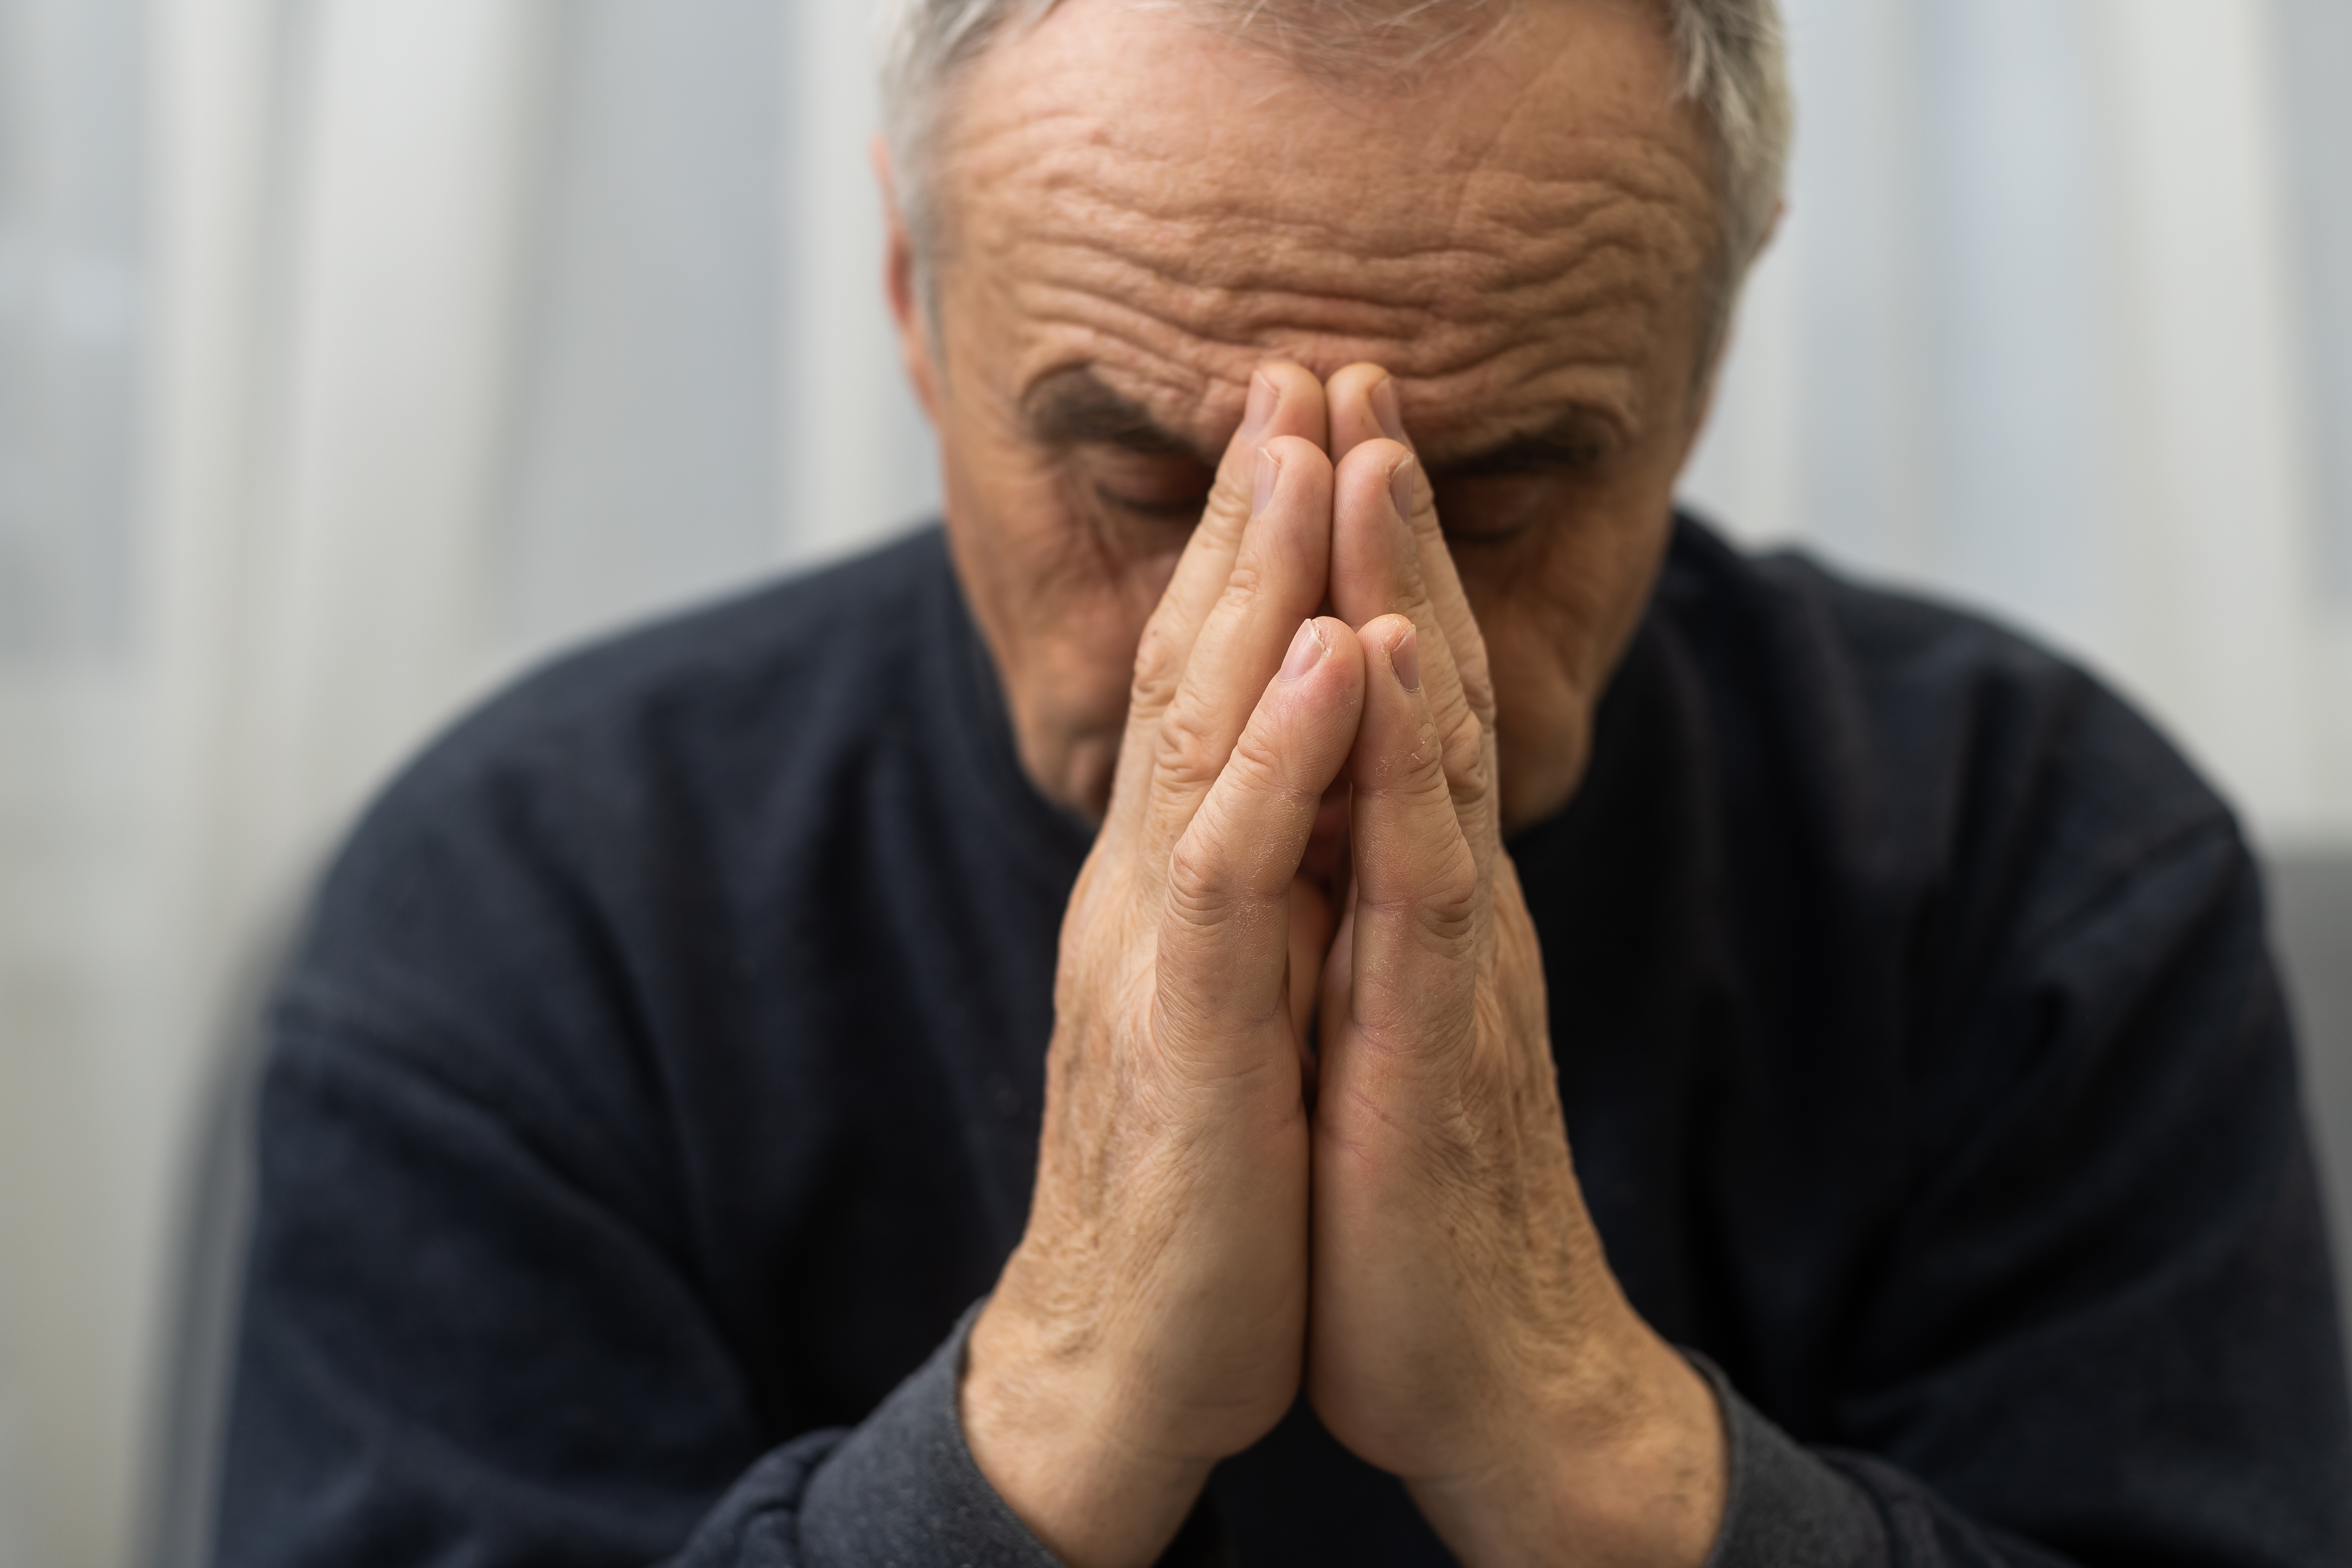 Man asks for forgiveness | Shutterstock